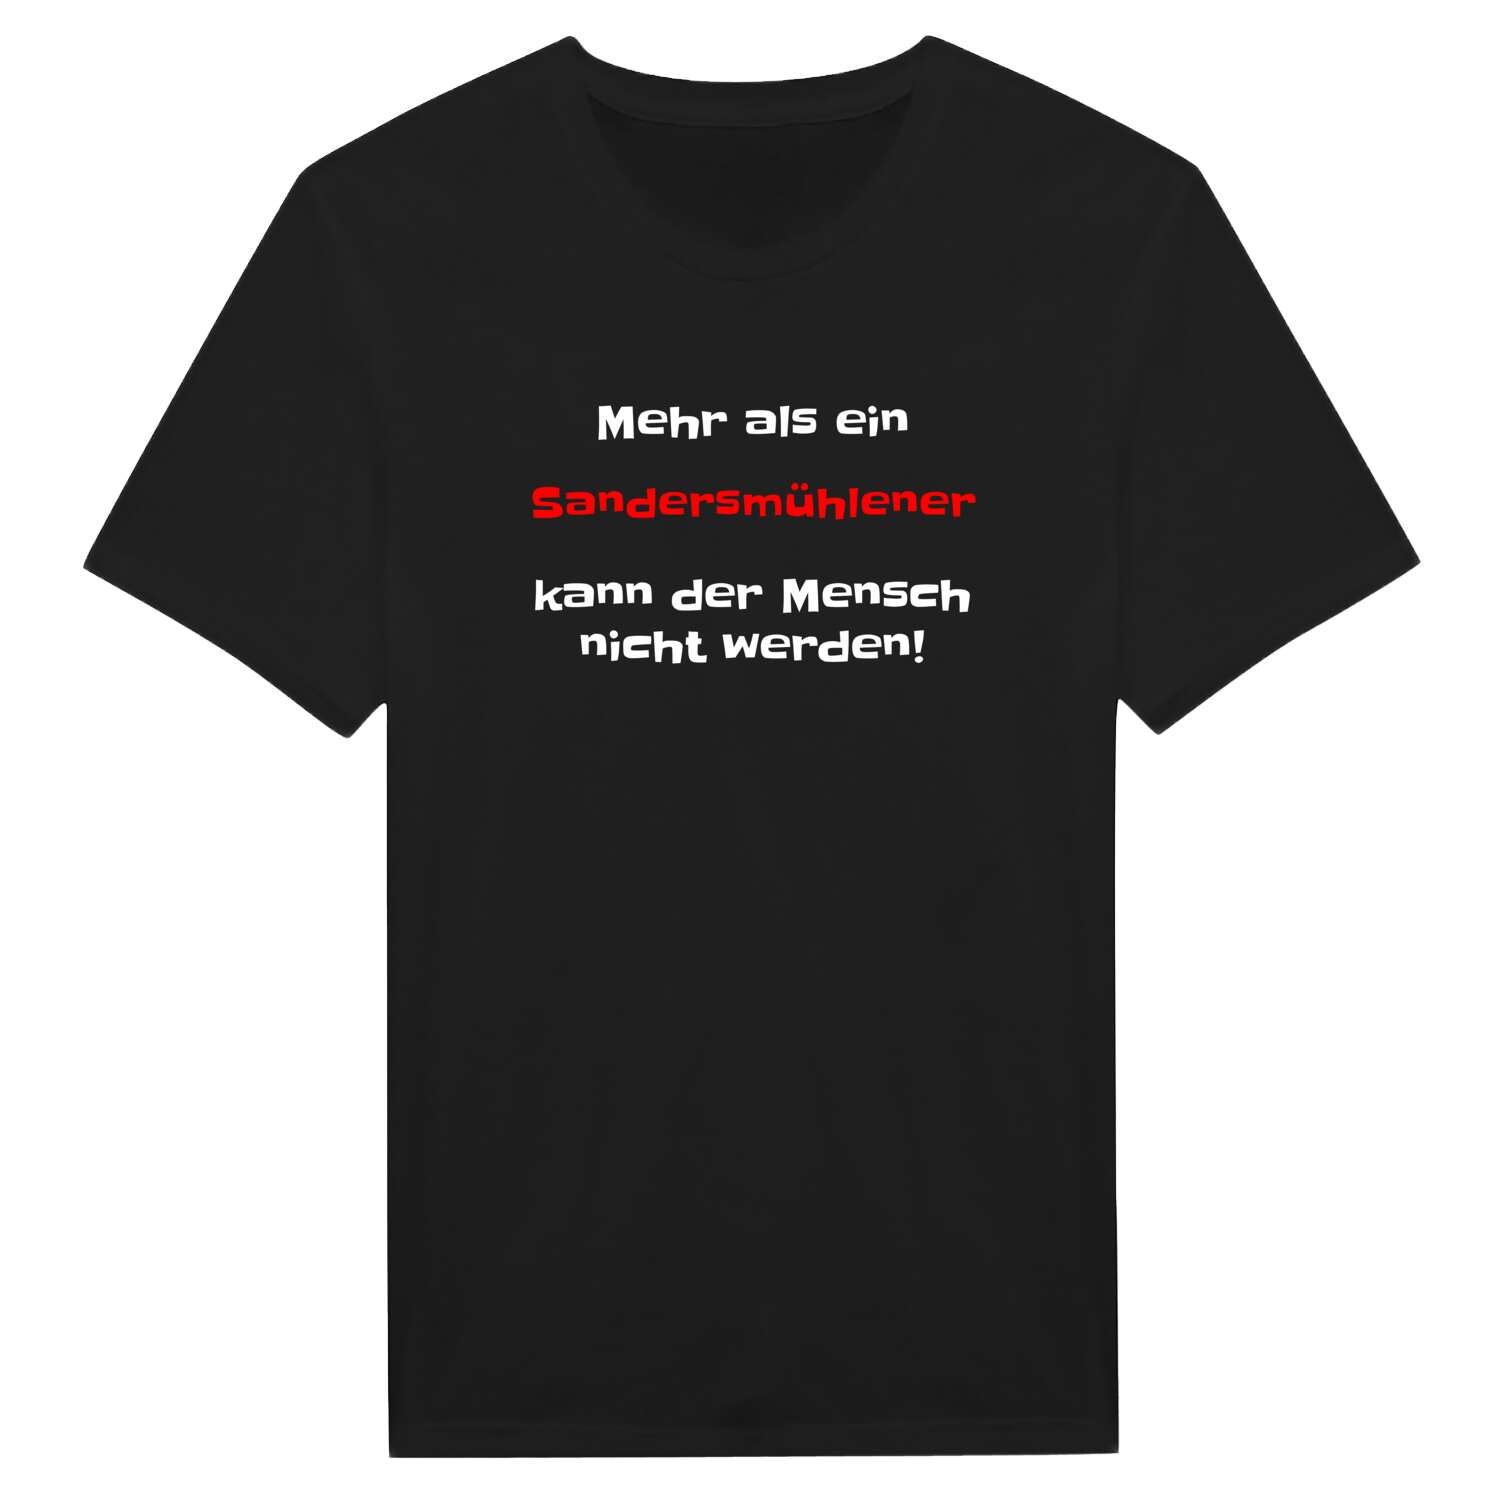 Sandersmühle T-Shirt »Mehr als ein«